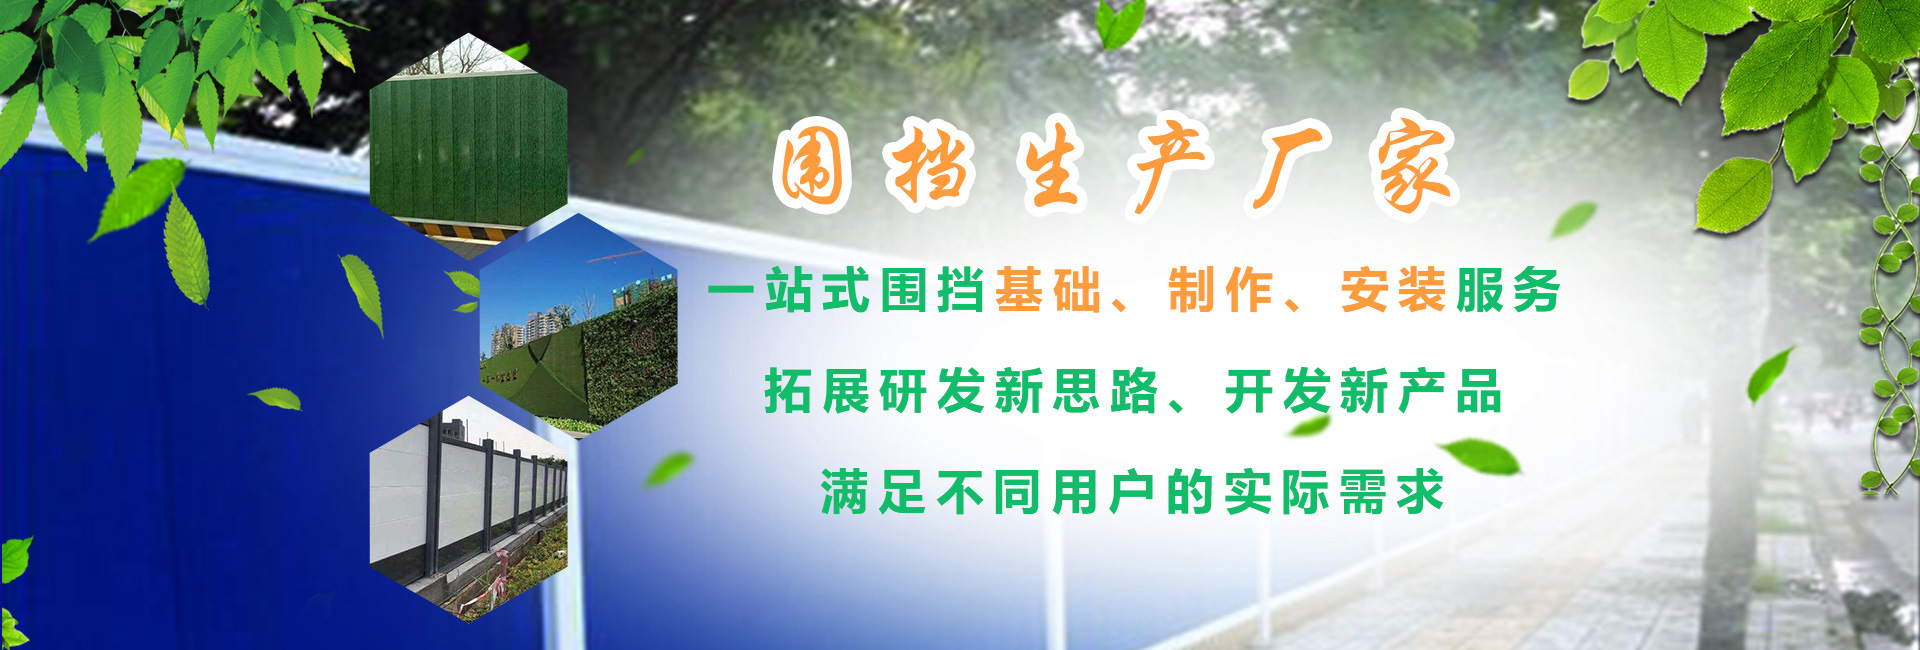 重庆艾优新型环保建材有限公司